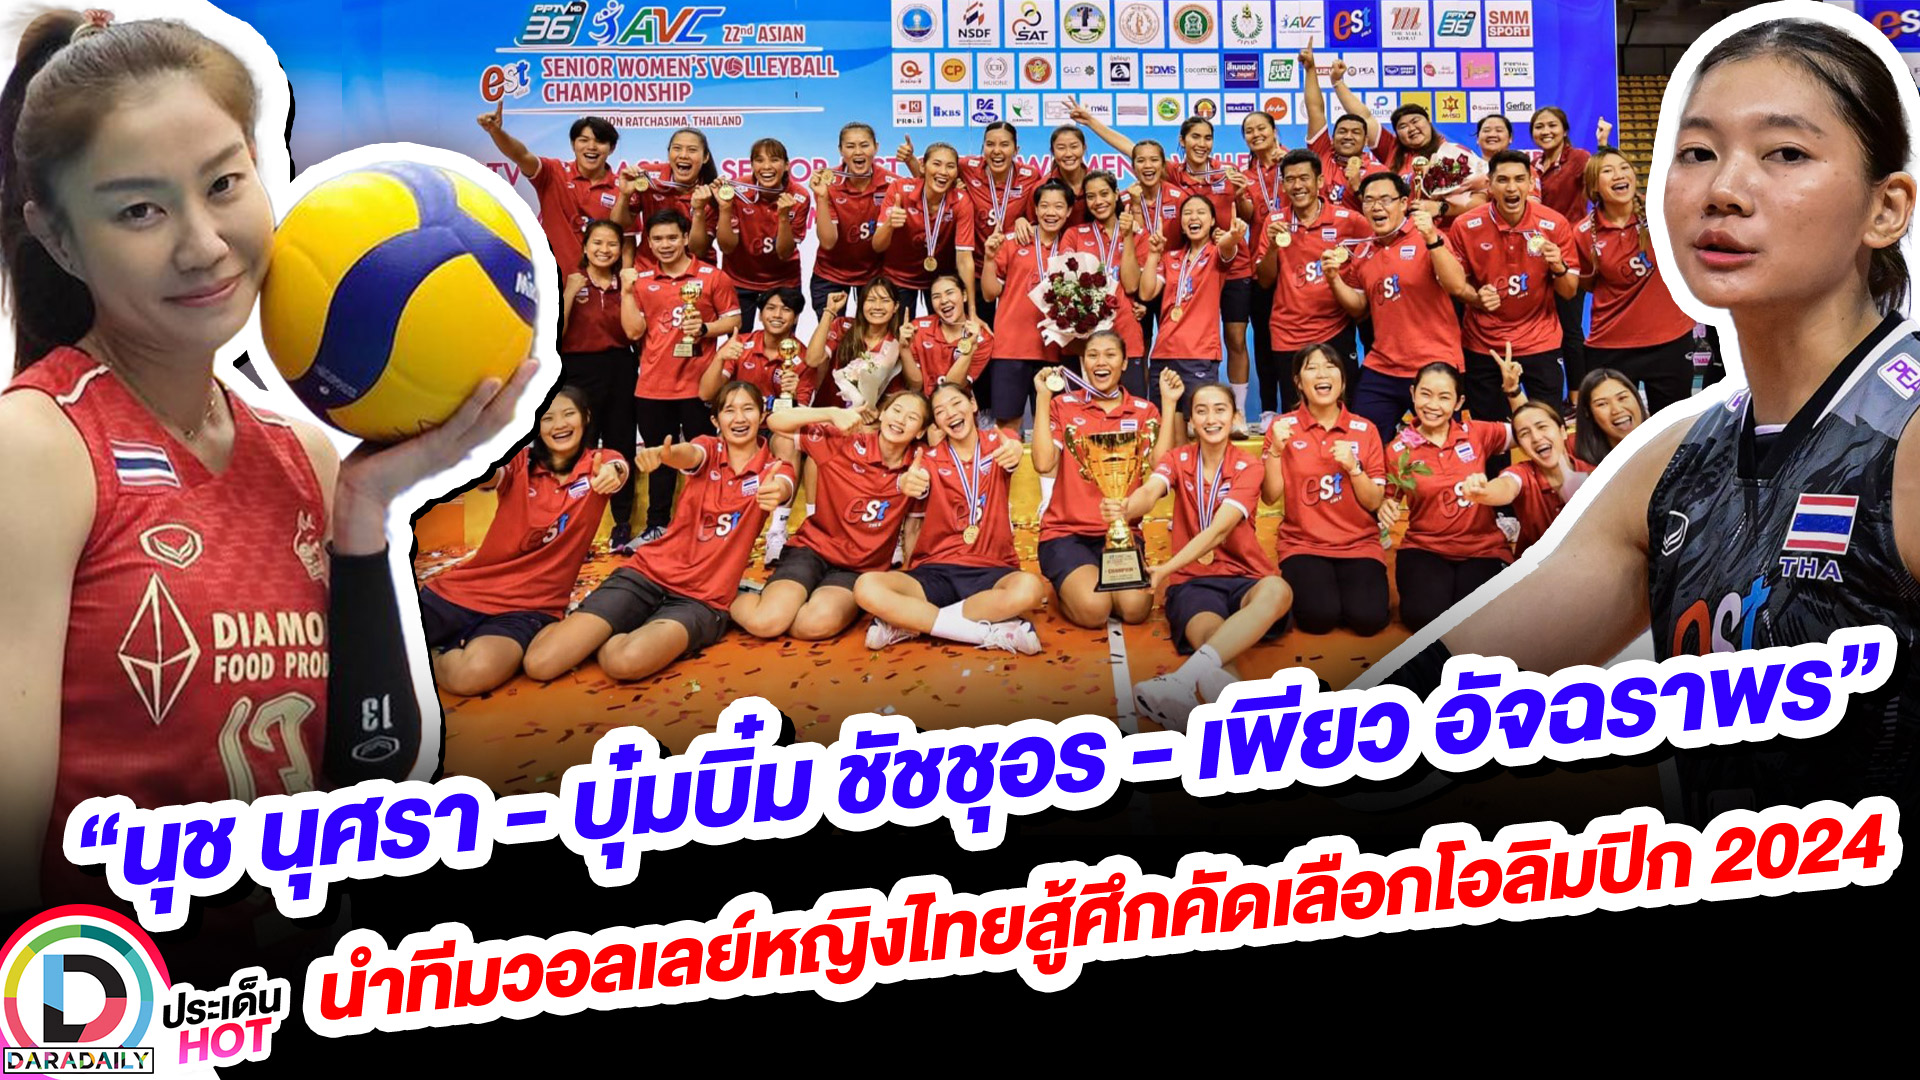 “นุช นุศรา - บุ๋มบิ๋ม ชัชชุอร - เพียว อัจฉราพร“ นำทีมวอลเลย์หญิงไทยสู้ศึกคัดเลือกโอลิมปิก 2024